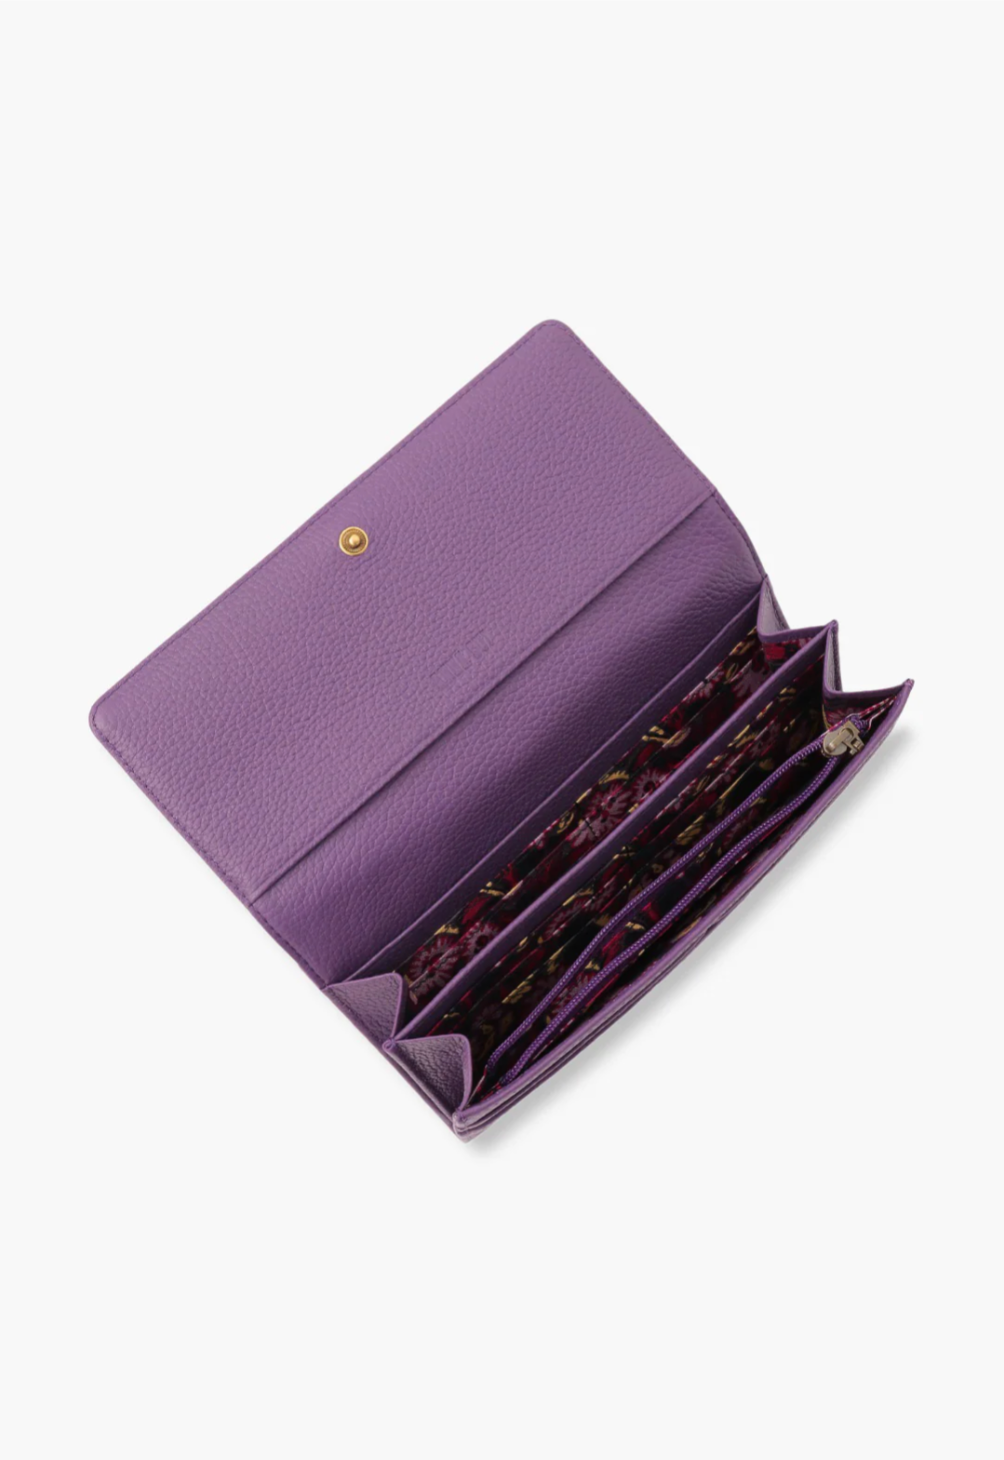 Nova Wallet purple, 12 card slots, 3 bill slots, 1 zipper compartment and 5 open compartments.